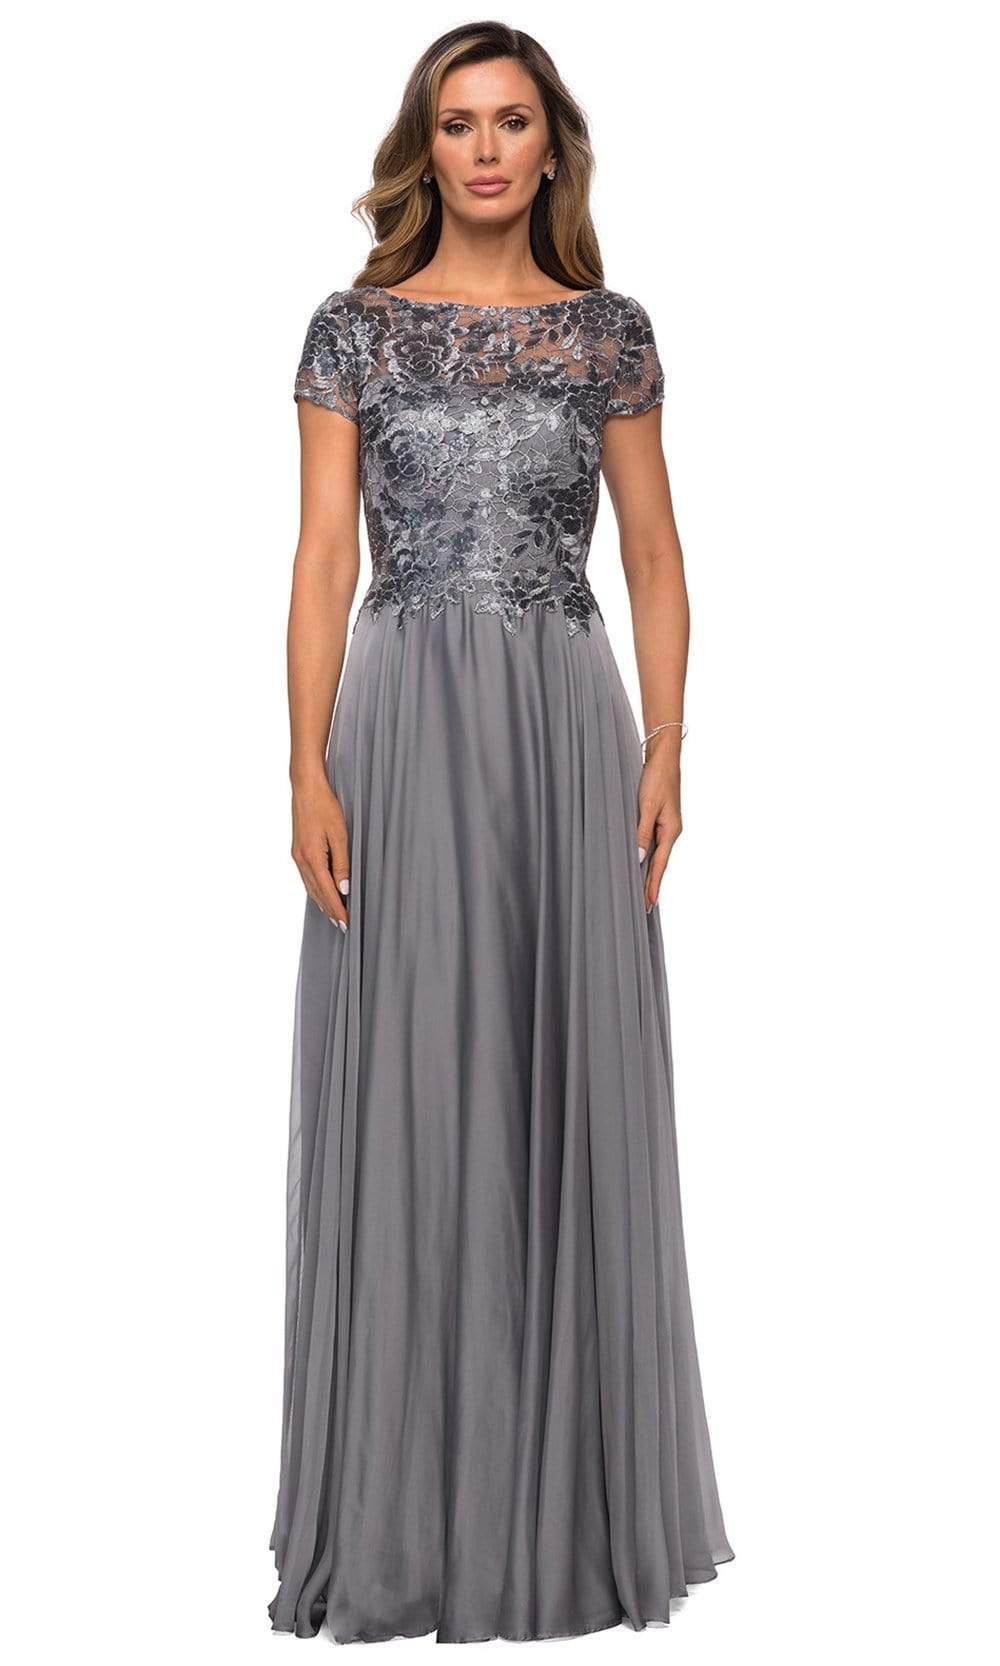 La Femme - 27924 Sequined Lace Bodice A-Line Dress Mother of the Bride Dresses 4 / Platinum